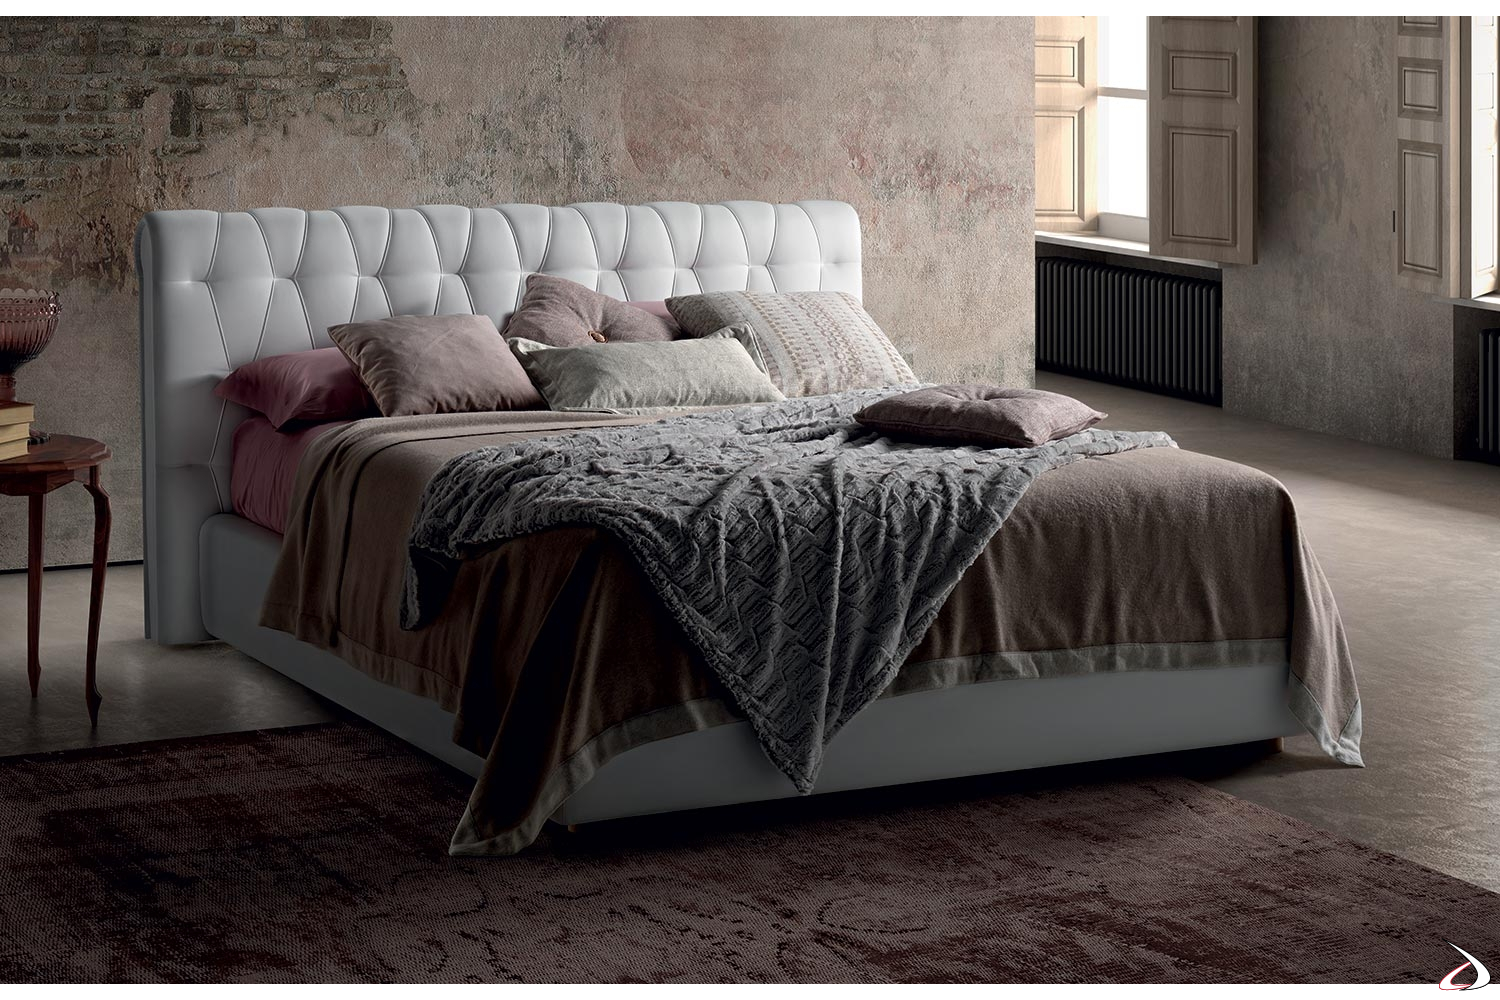 Letto Matrimoniale Con Testata In Pelle.Dejavu Upholstered Double Bed Toparredi Arredo Design Online